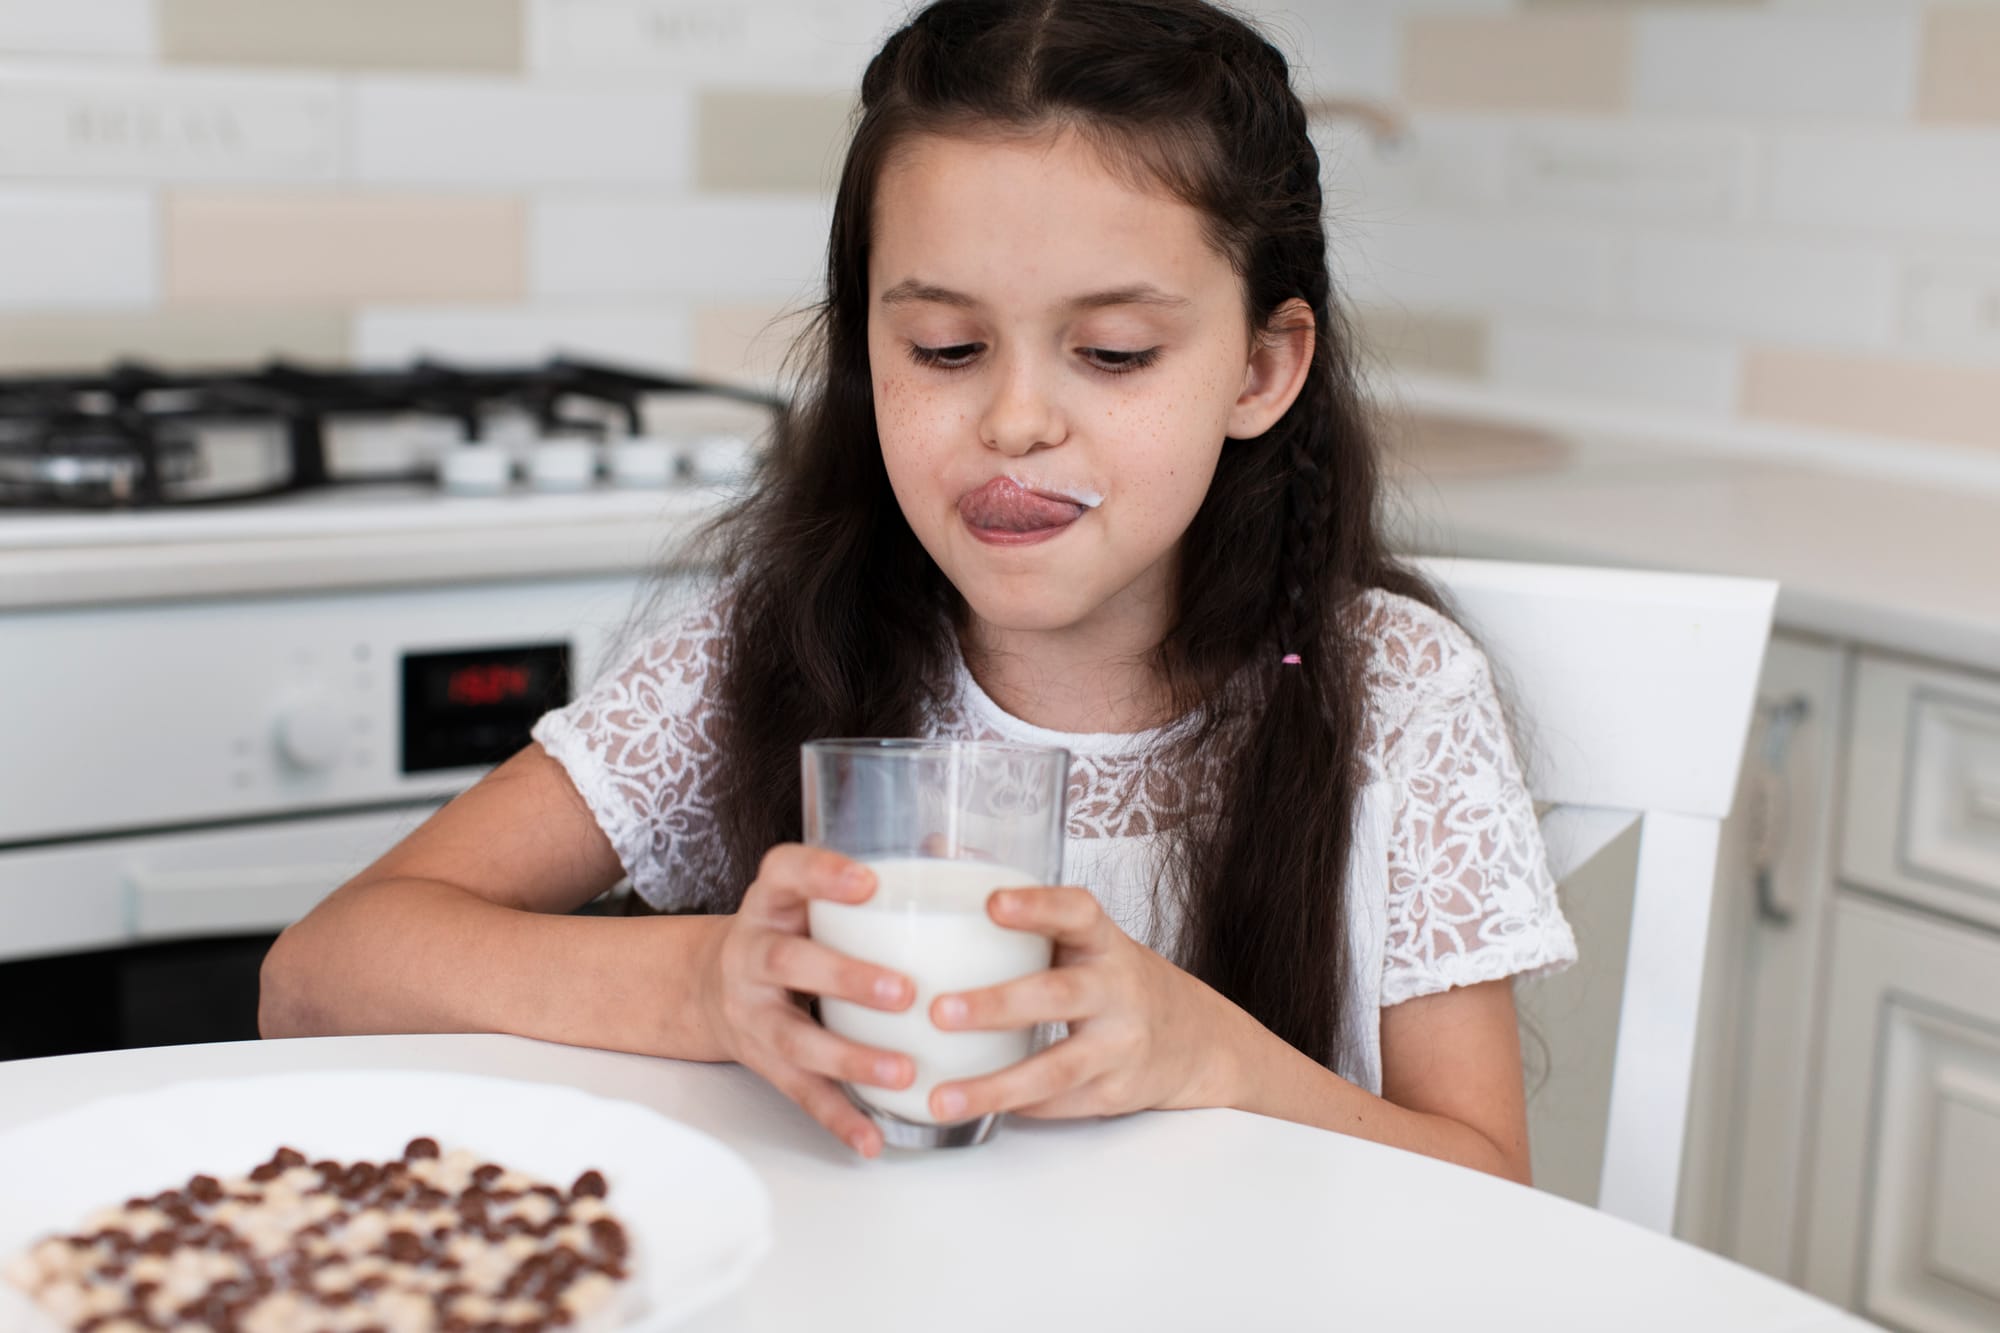 Intolerancia a la lactosa en niños: 5 síntomas a los que prestar atención